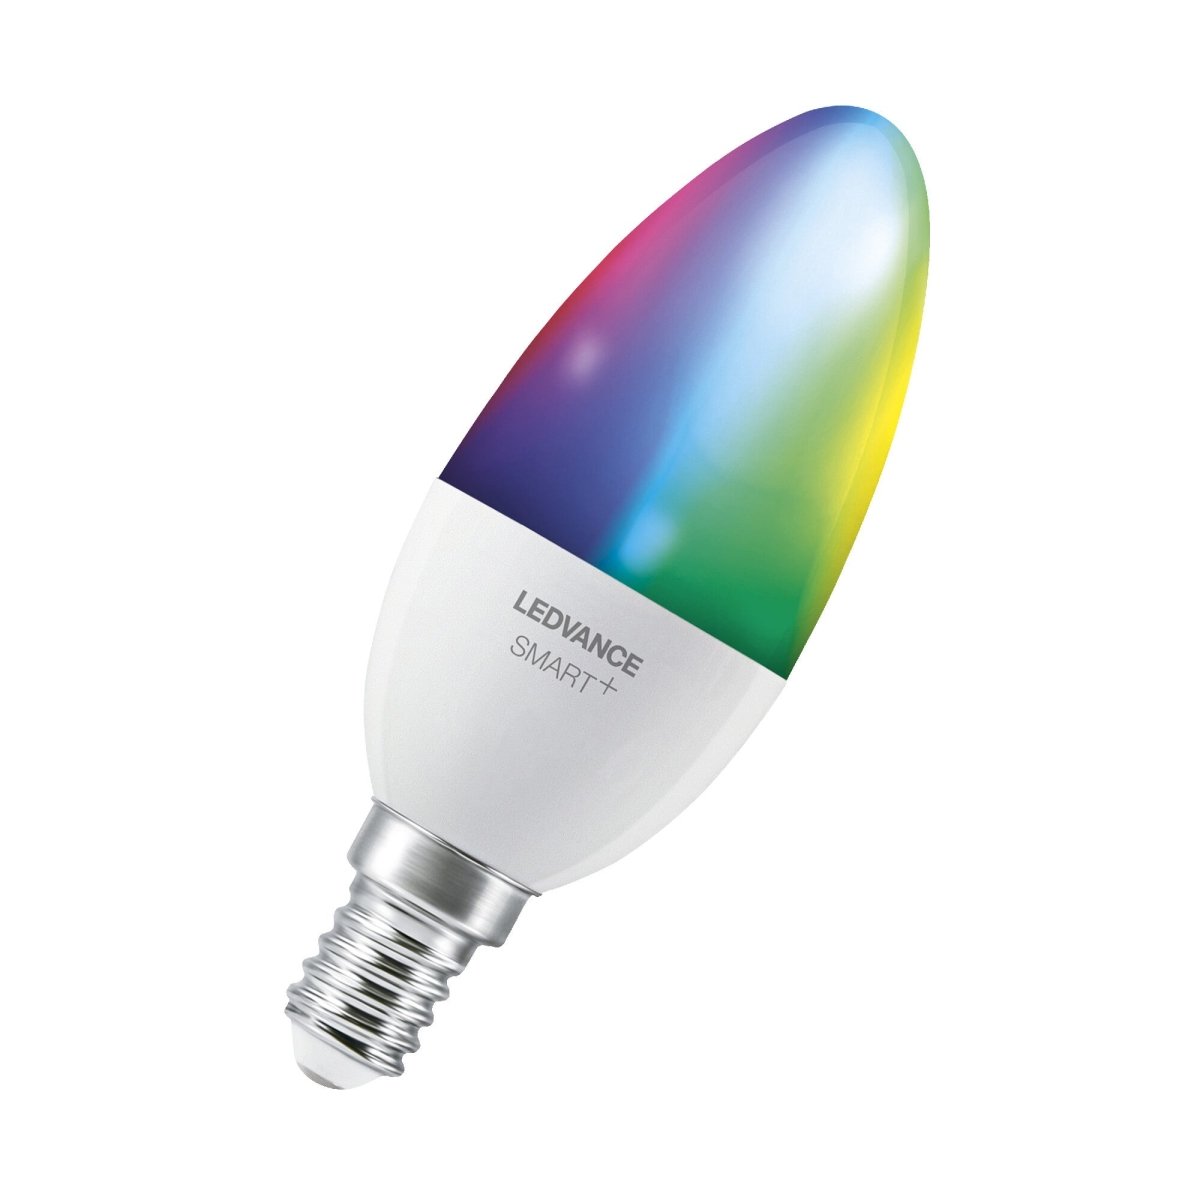 3 szt. Inteligentna lampa WiFi LED RGBW E14 5W, świeczka - eshop LEDVANCE 4058075485938